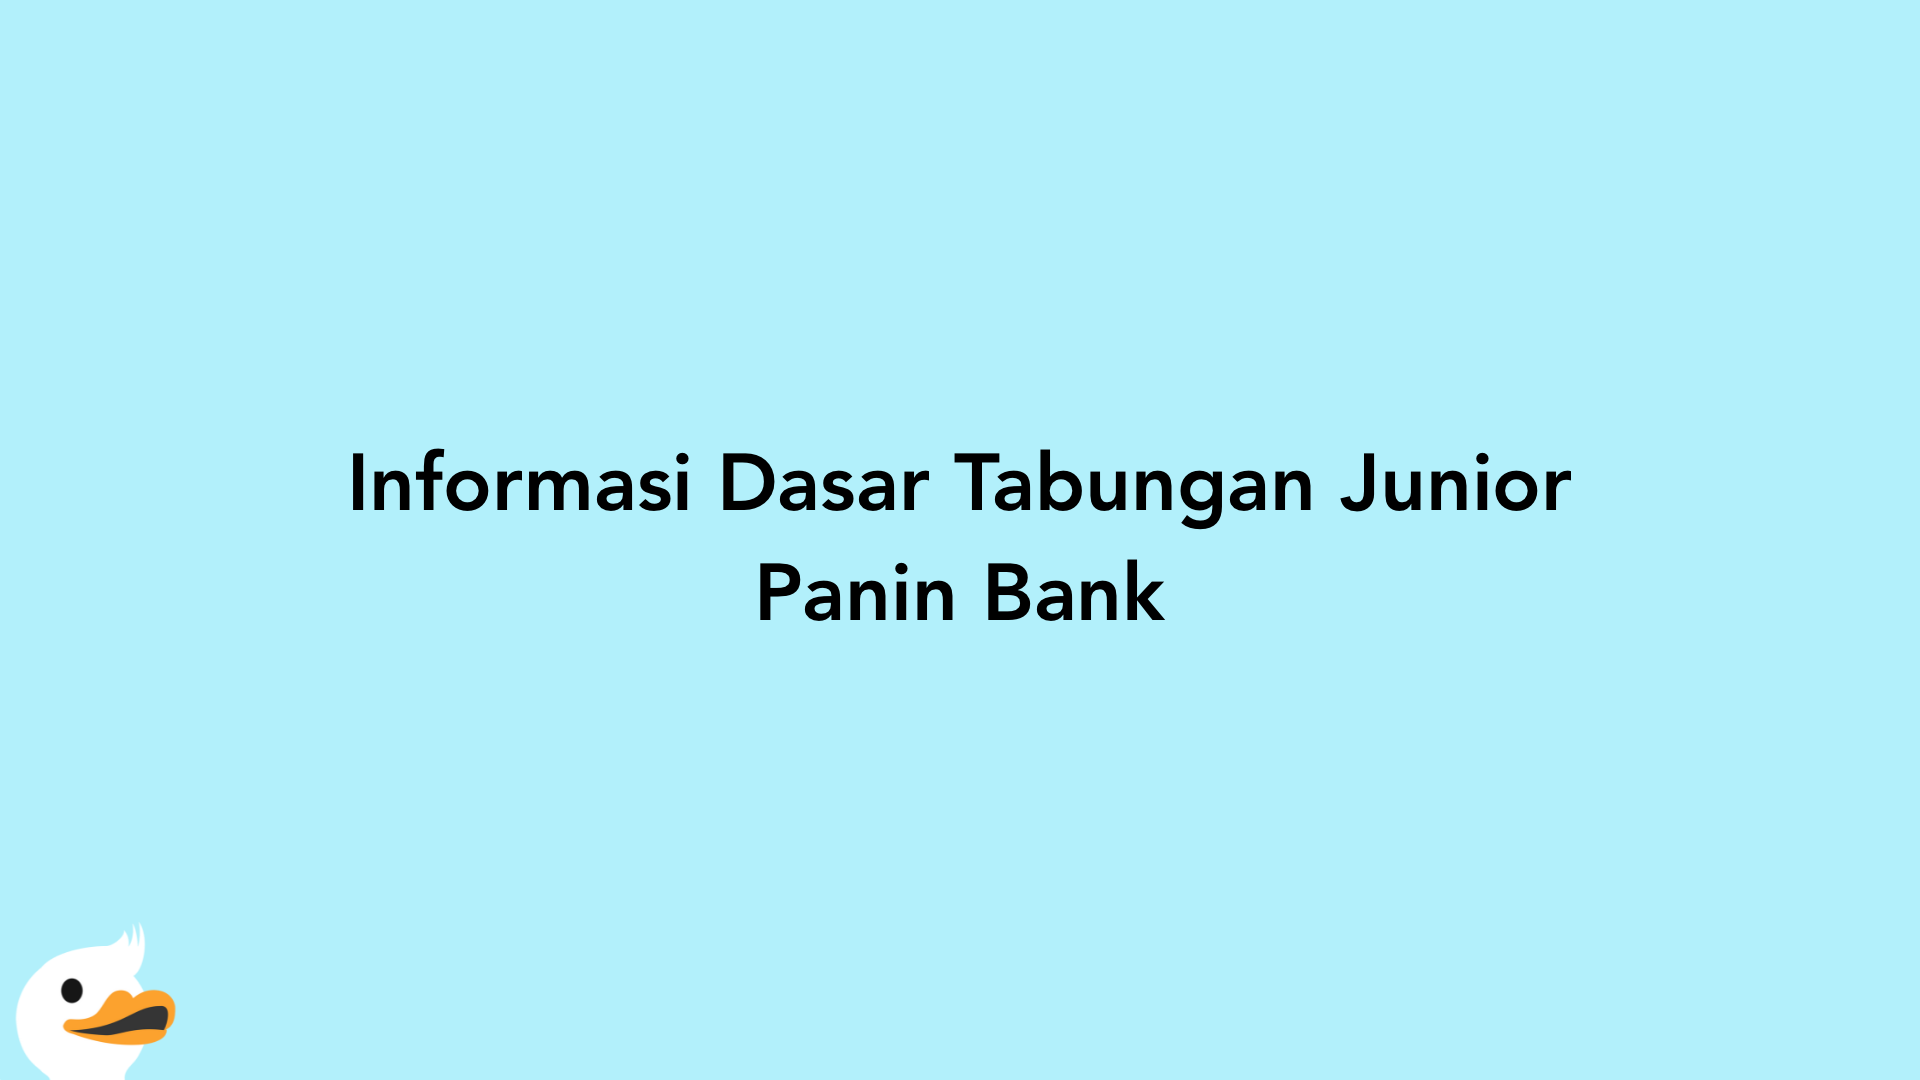 Informasi Dasar Tabungan Junior Panin Bank